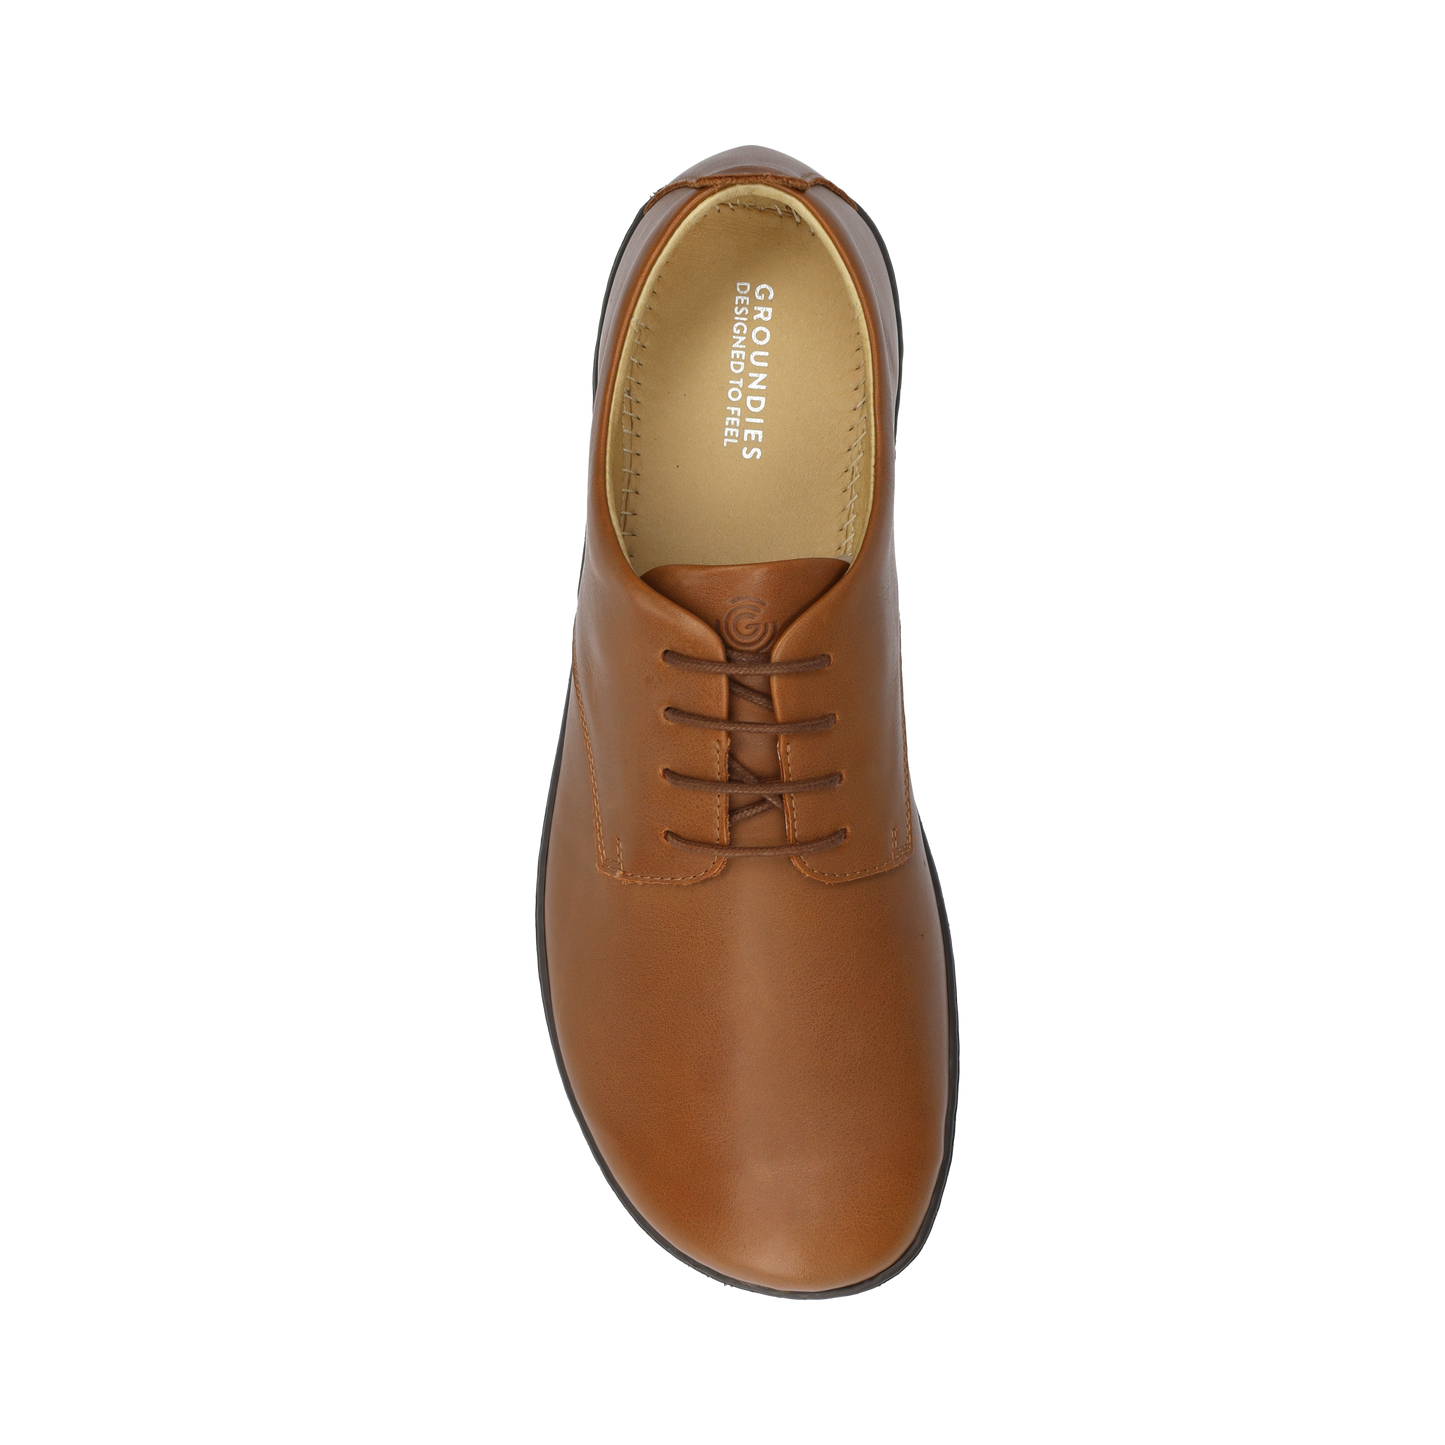 Groundies Palermo Men barfods klassisk oxford sko til mænd i farven brown, top